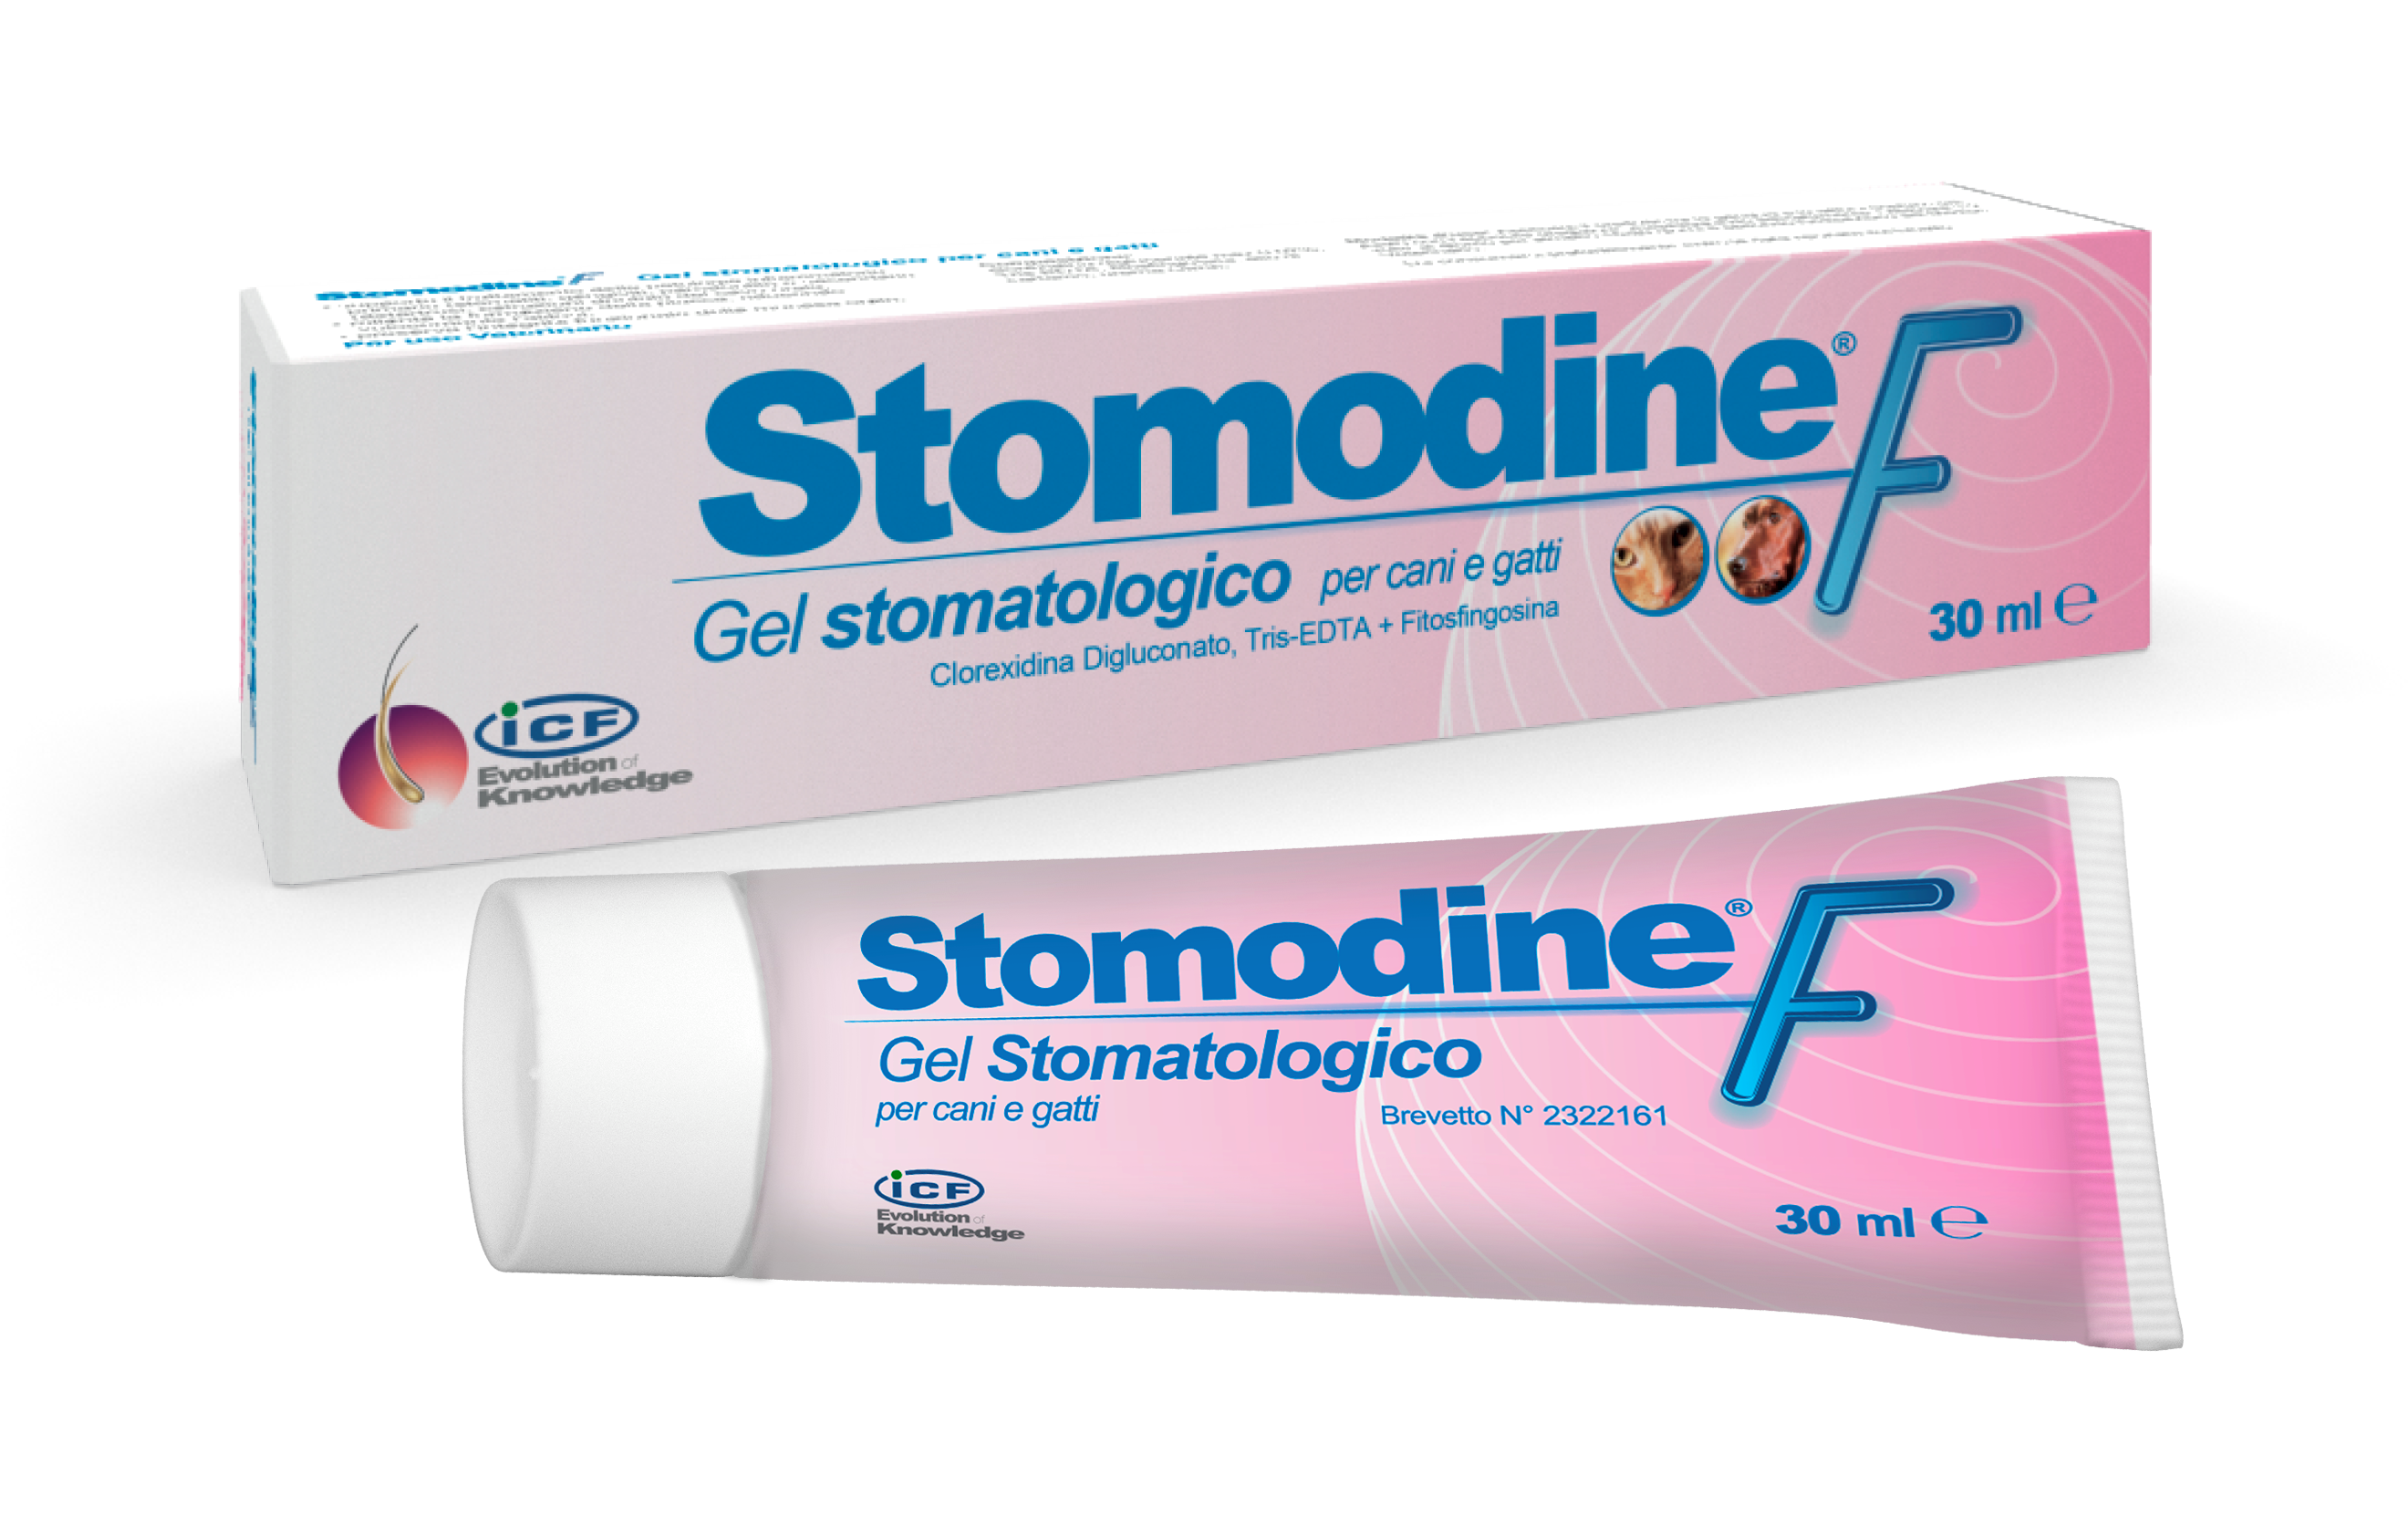 Stomodine F